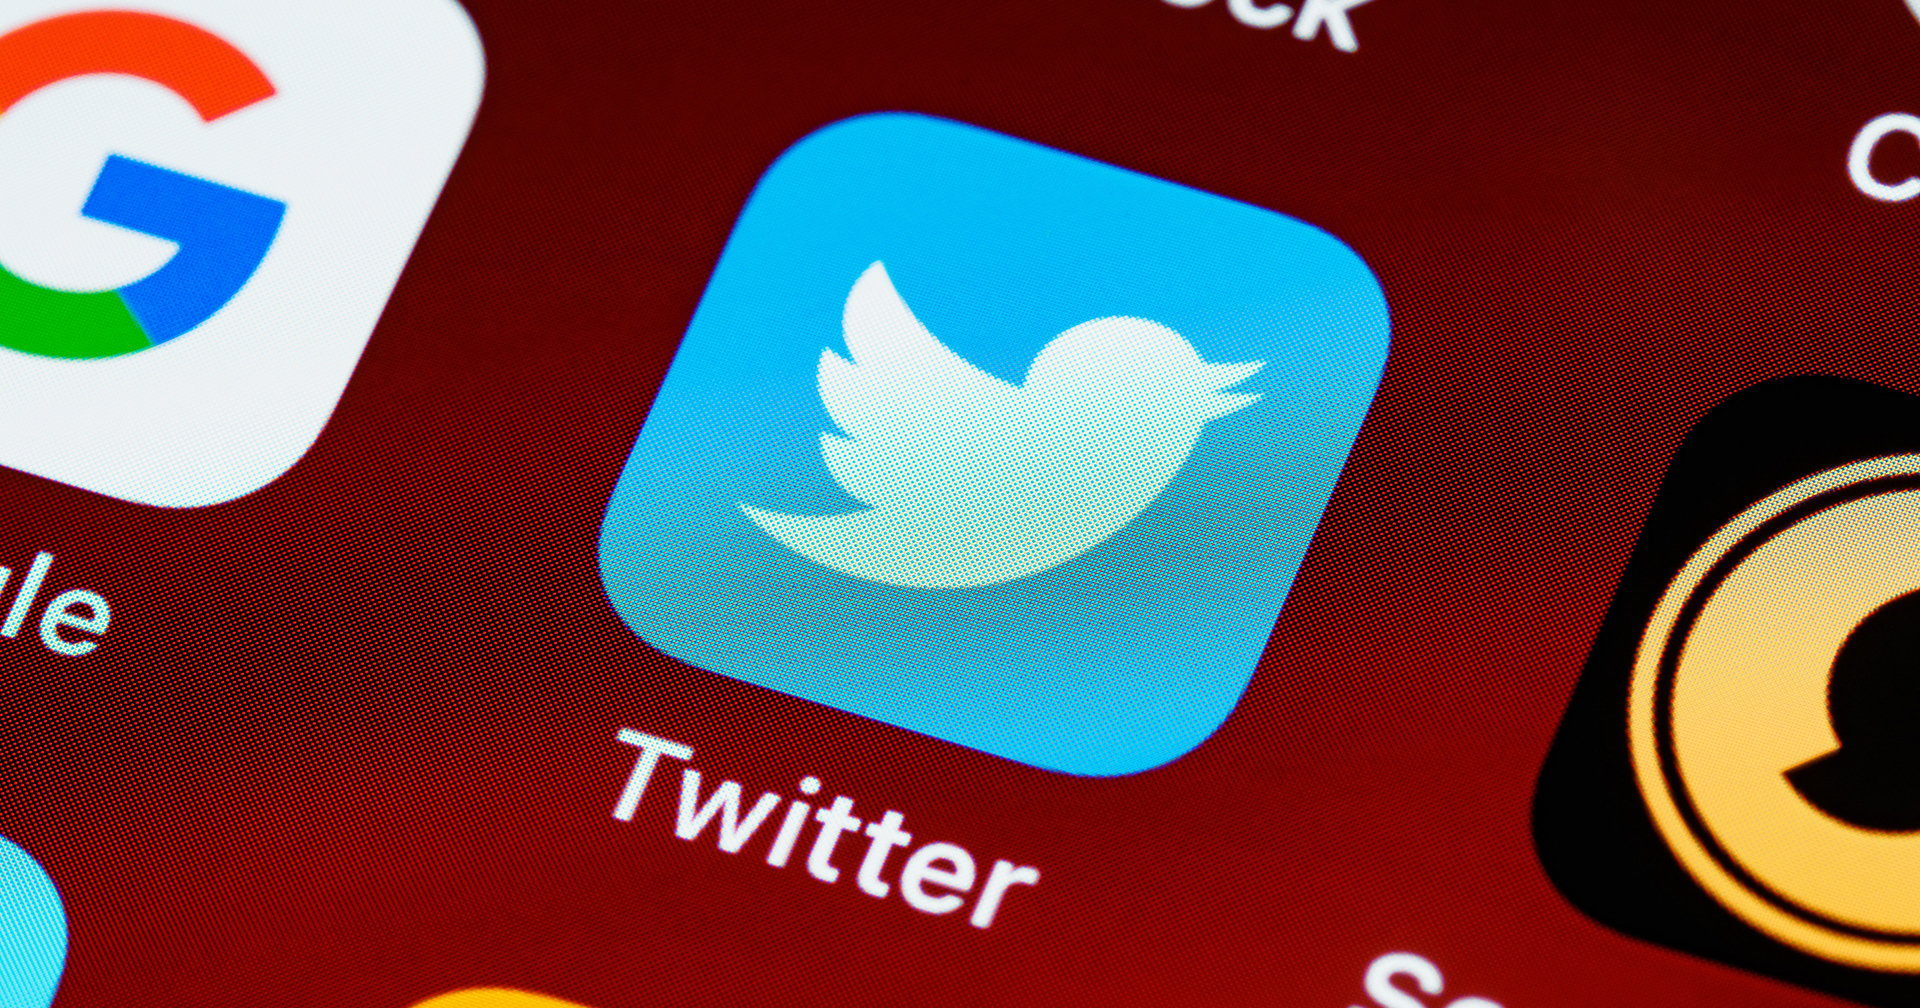 Twitter จะอนุญาตให้โหวตโพลล์ได้เฉพาะบัญชีที่ได้รับการยืนยันตัวตน เริ่มตั้งแต่ 15 เมษายน